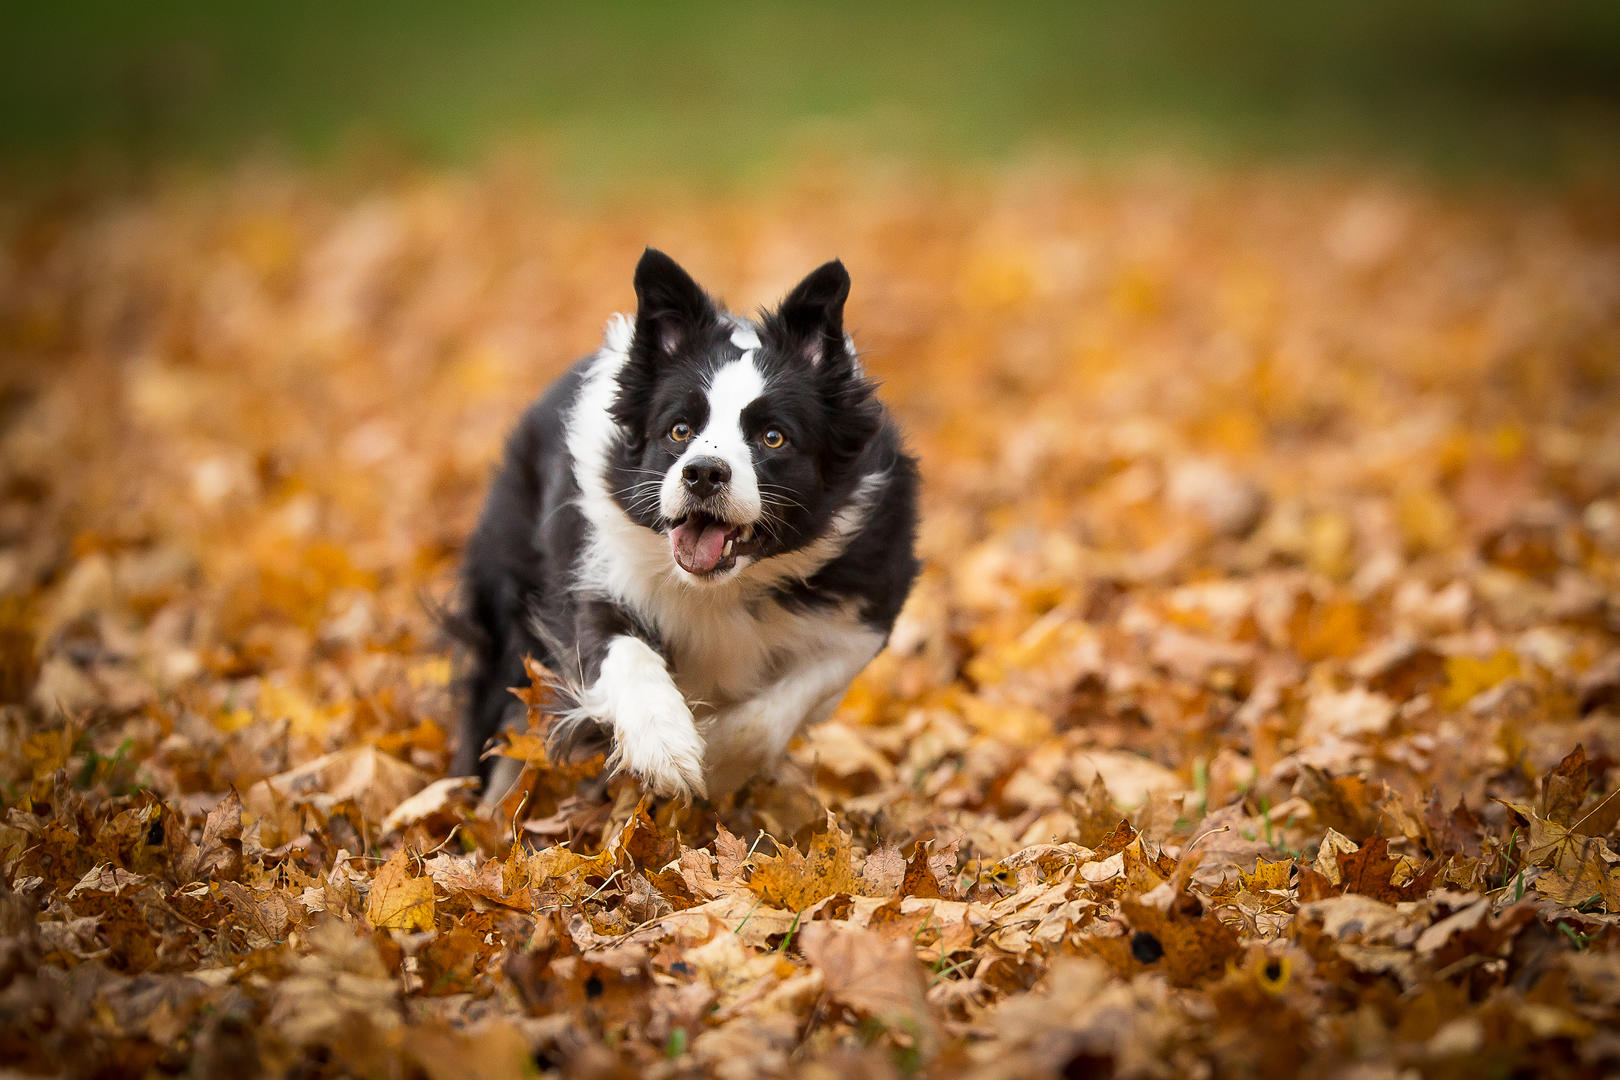 Running Dogs Photography: Hãy cùng chiêm ngưỡng bức ảnh động đẹp ánh sáng và màu sắc sặc sỡ về loài chó đang chạy. Running Dogs Photography là một thể loại nhiếp ảnh đầy năng lượng và tốc độ đang được yêu thích rộng rãi!